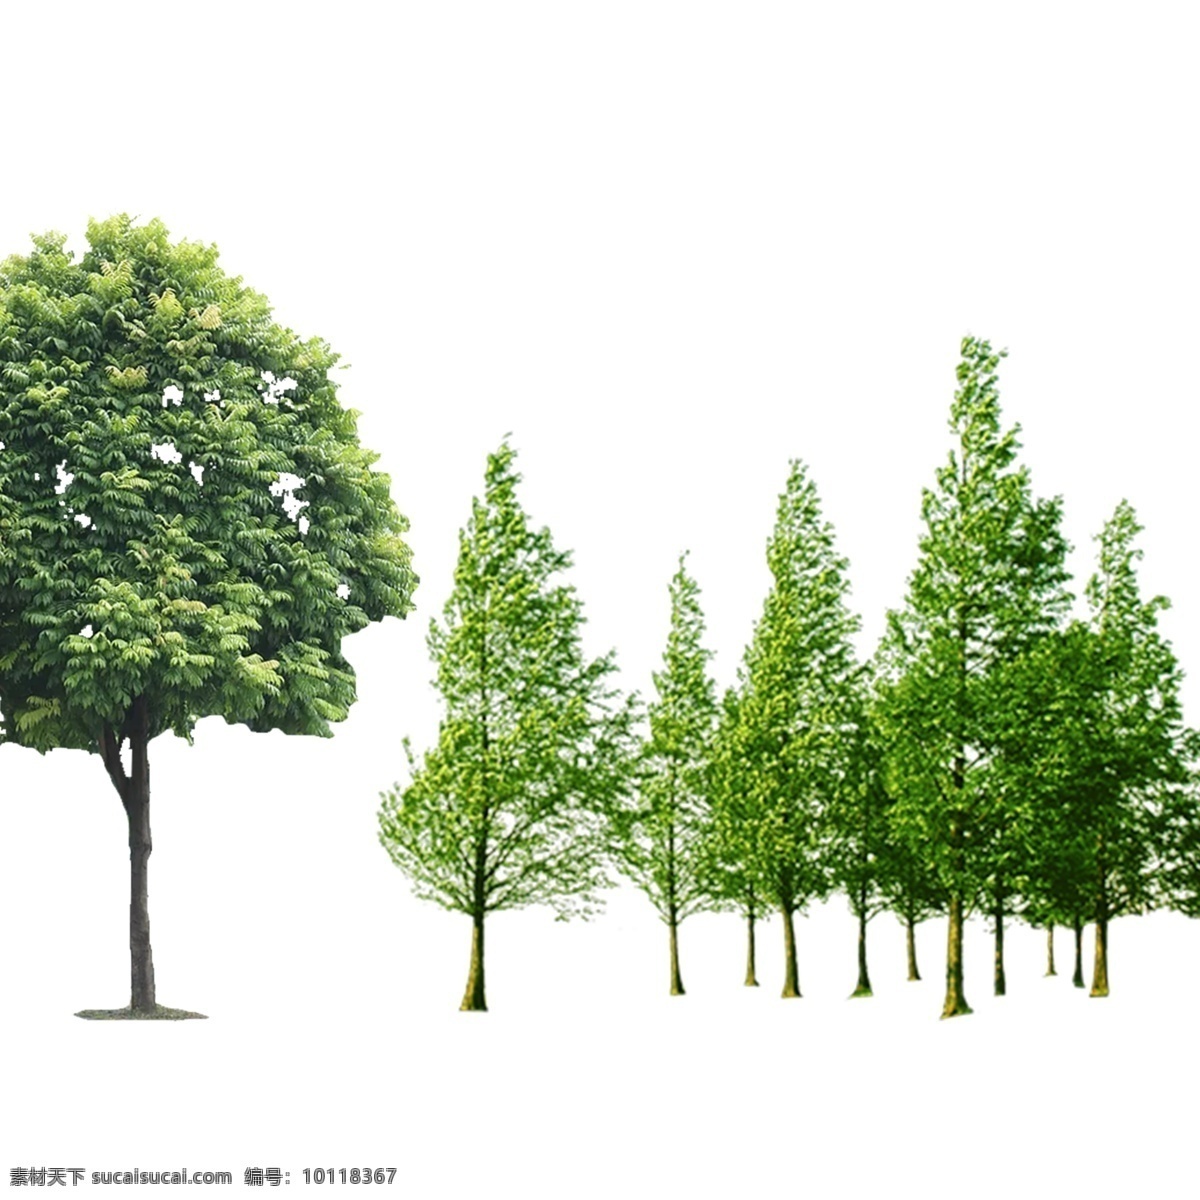 组 树 右面 棵 一个 层 一组树 树木 树叶 绿树 大树 小树 树苗 树素材